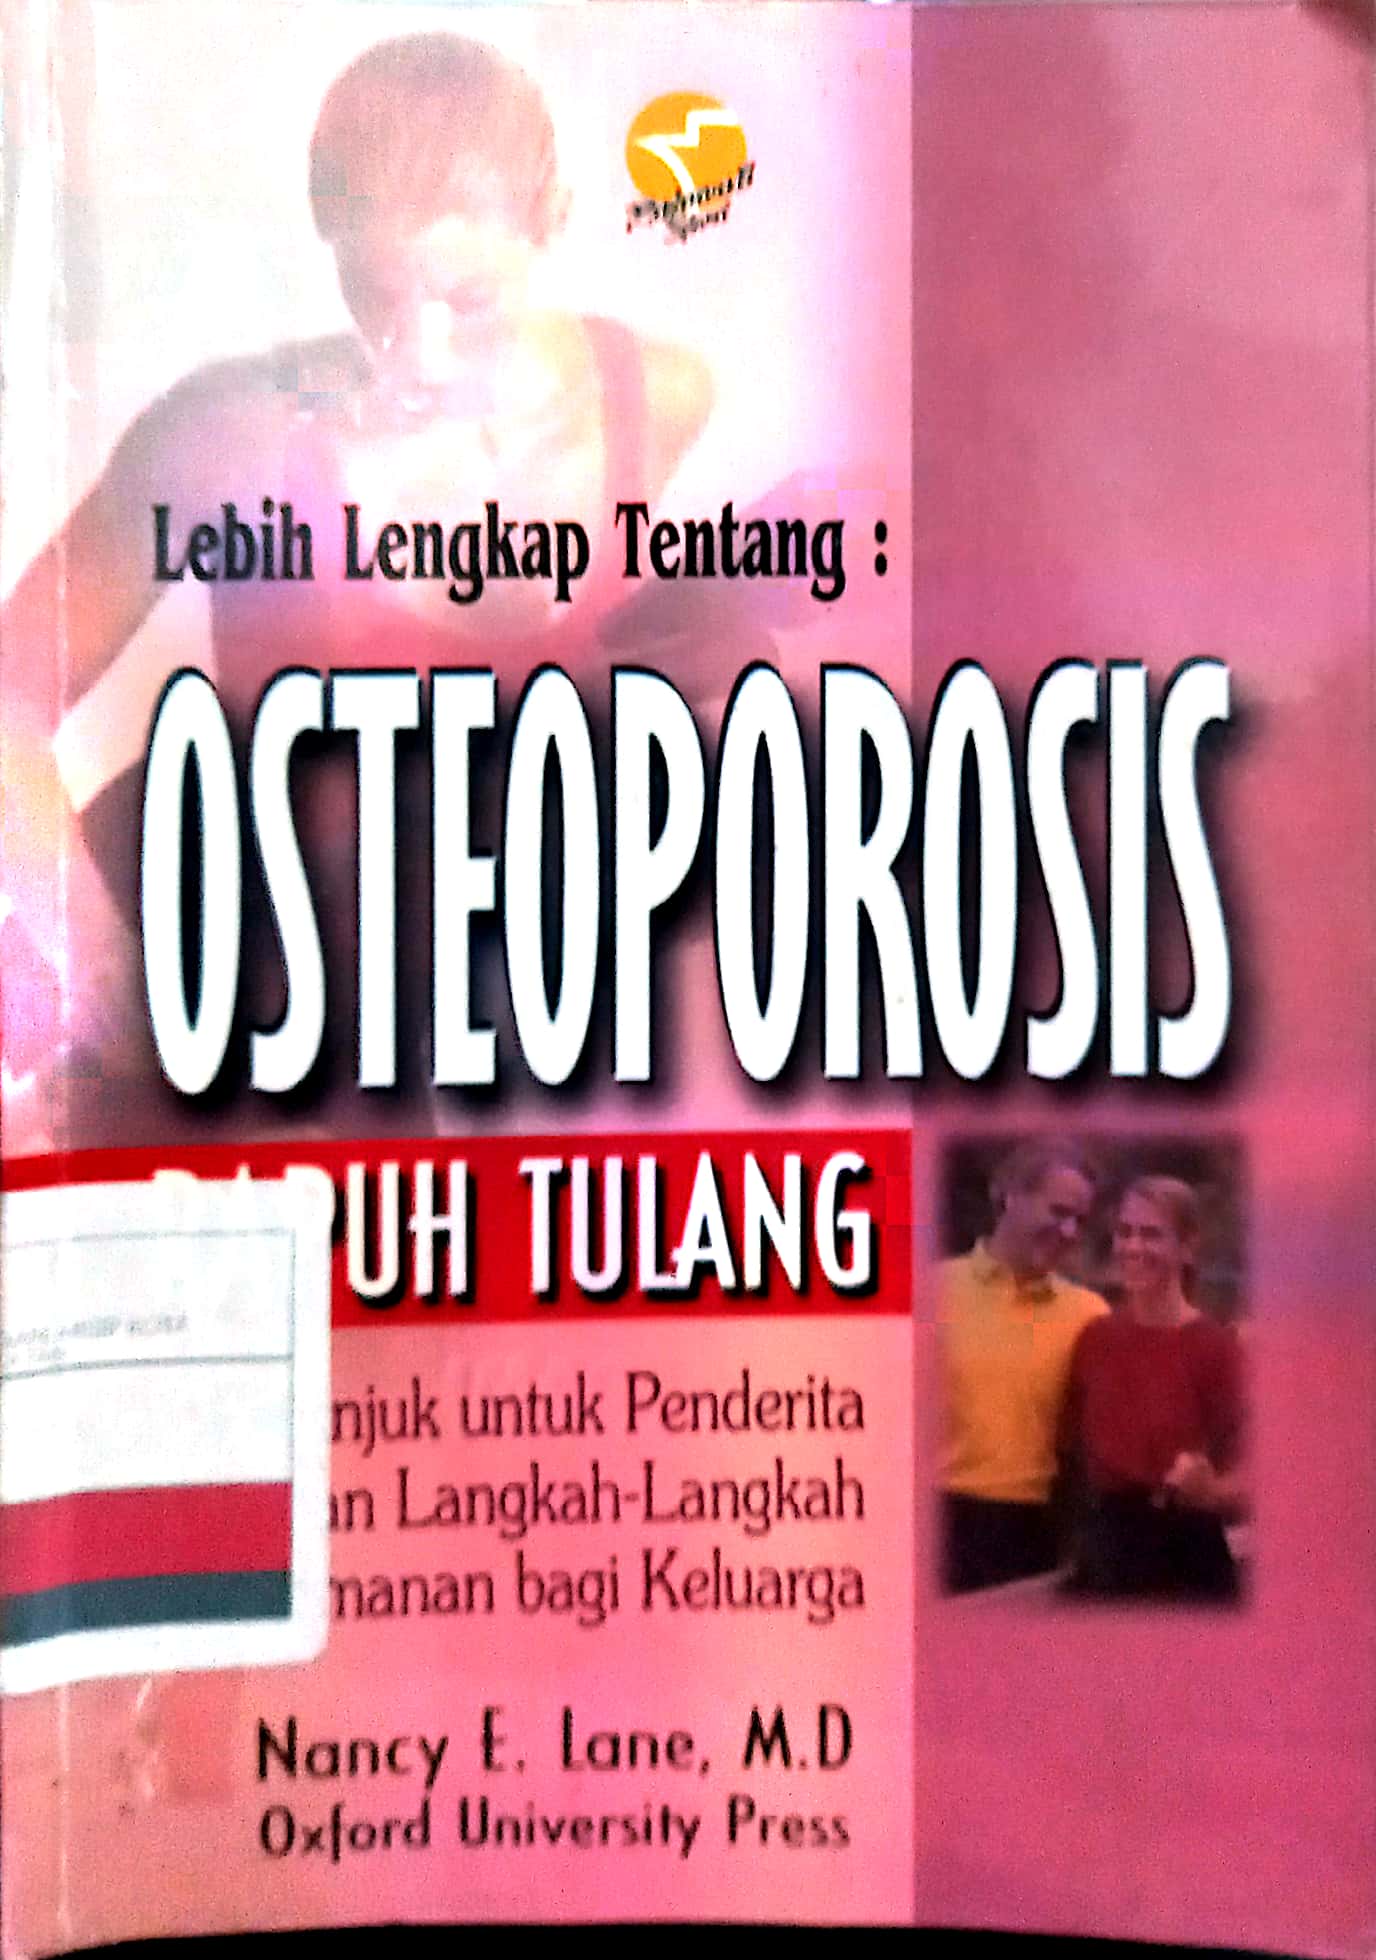 Lebih lengkap tentang: Osteoporosis :  Petunjuk untuk penderita dan langkah-langkah penggunaan bagi keluarga